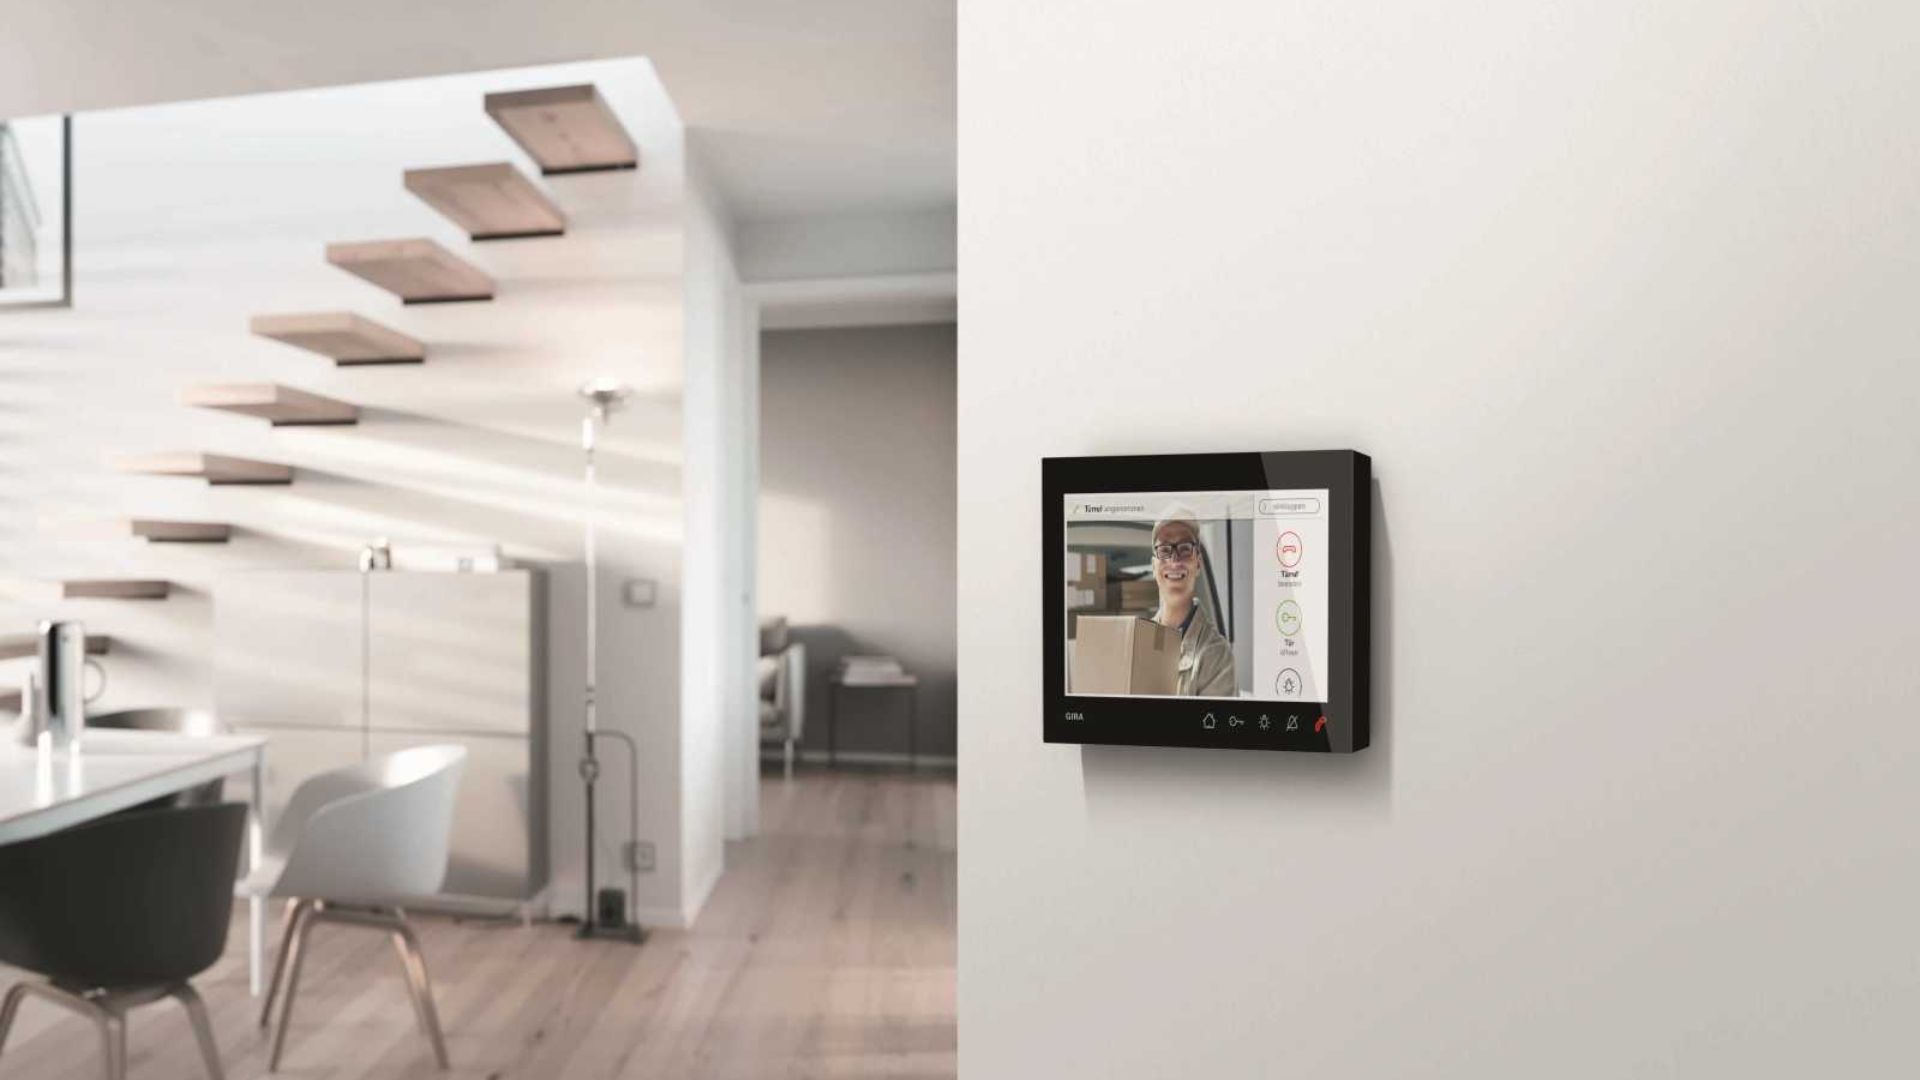 Die Gira Wohnungsstation Video AP 7 mit 7-Zoll Display zeigt hochauflösende Bilder und ermöglicht die direkte Kommunikation. Mehr zum Produkt ➦